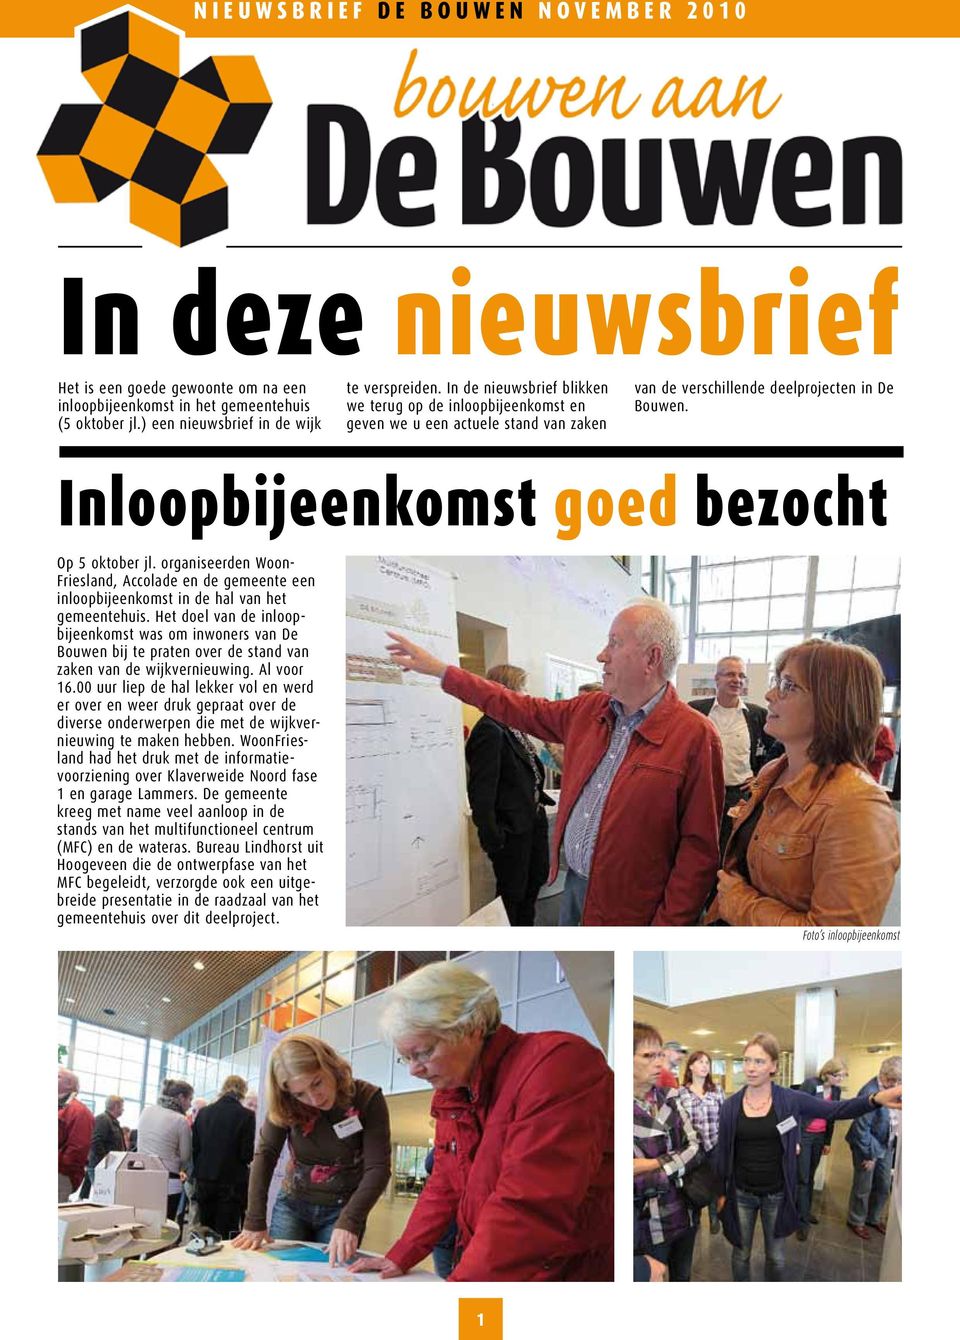 organiseerden Woon- Friesland, Accolade en de gemeente een inloopbijeenkomst in de hal van het gemeentehuis.